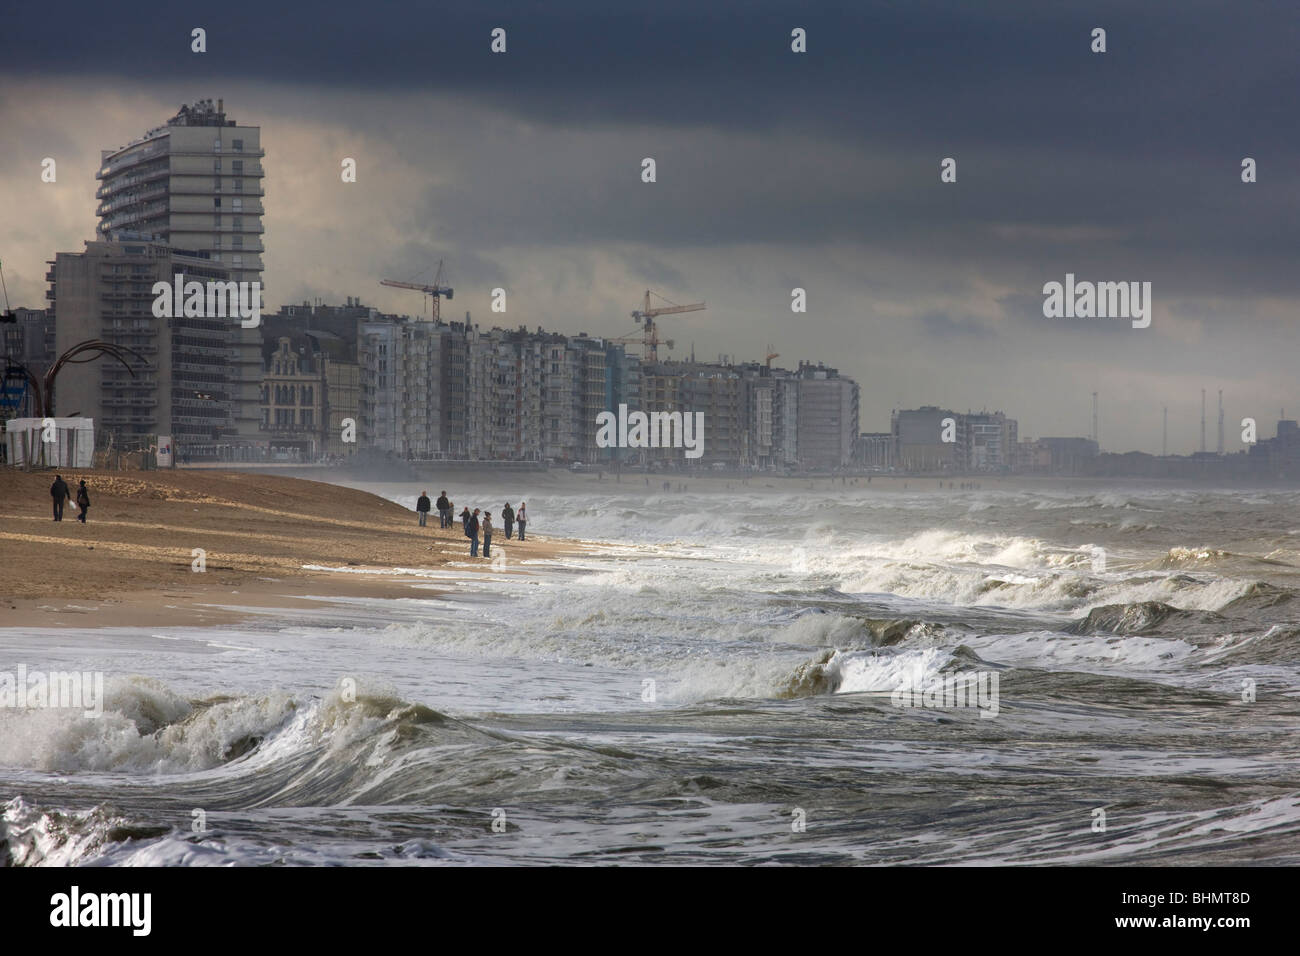 Bloc d'appartements et plage en tempête en mer, Ostende, Belgique Banque D'Images